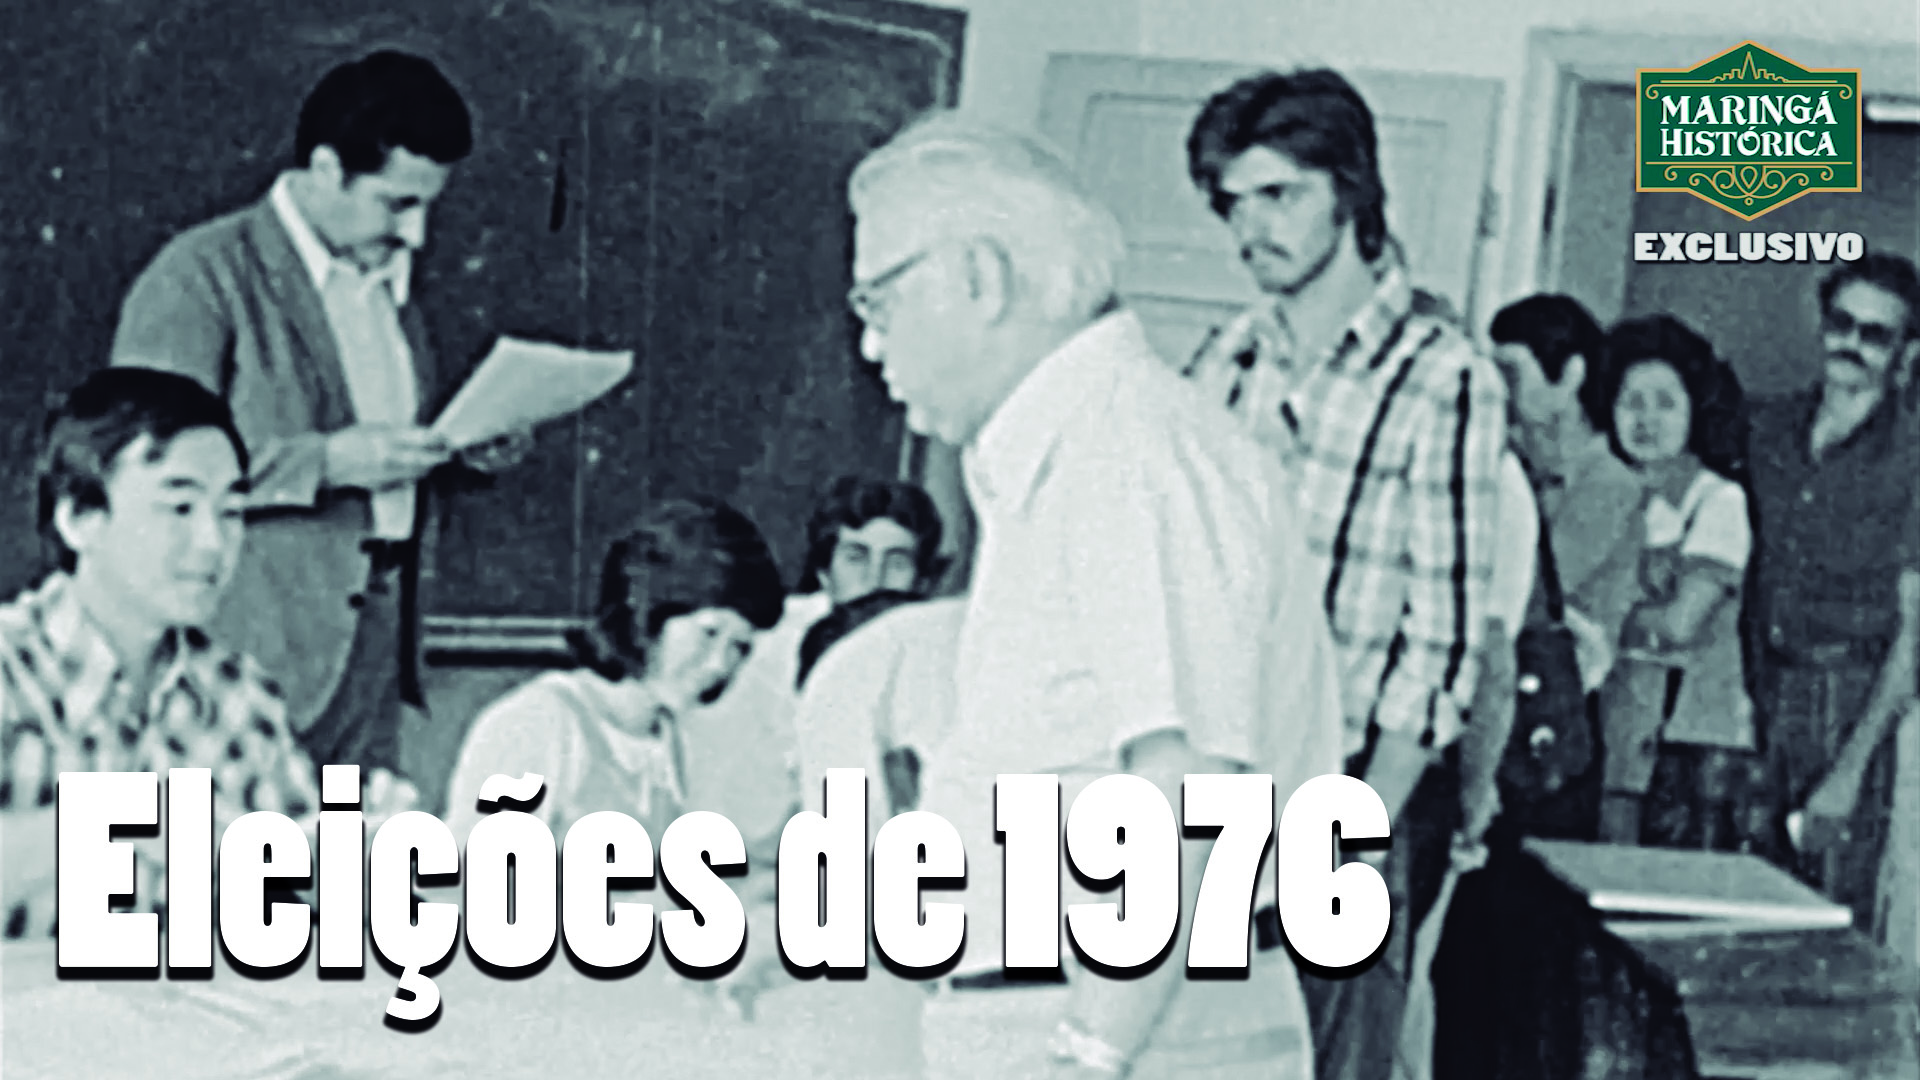 RARIDADE - Candidatos votando em 1976